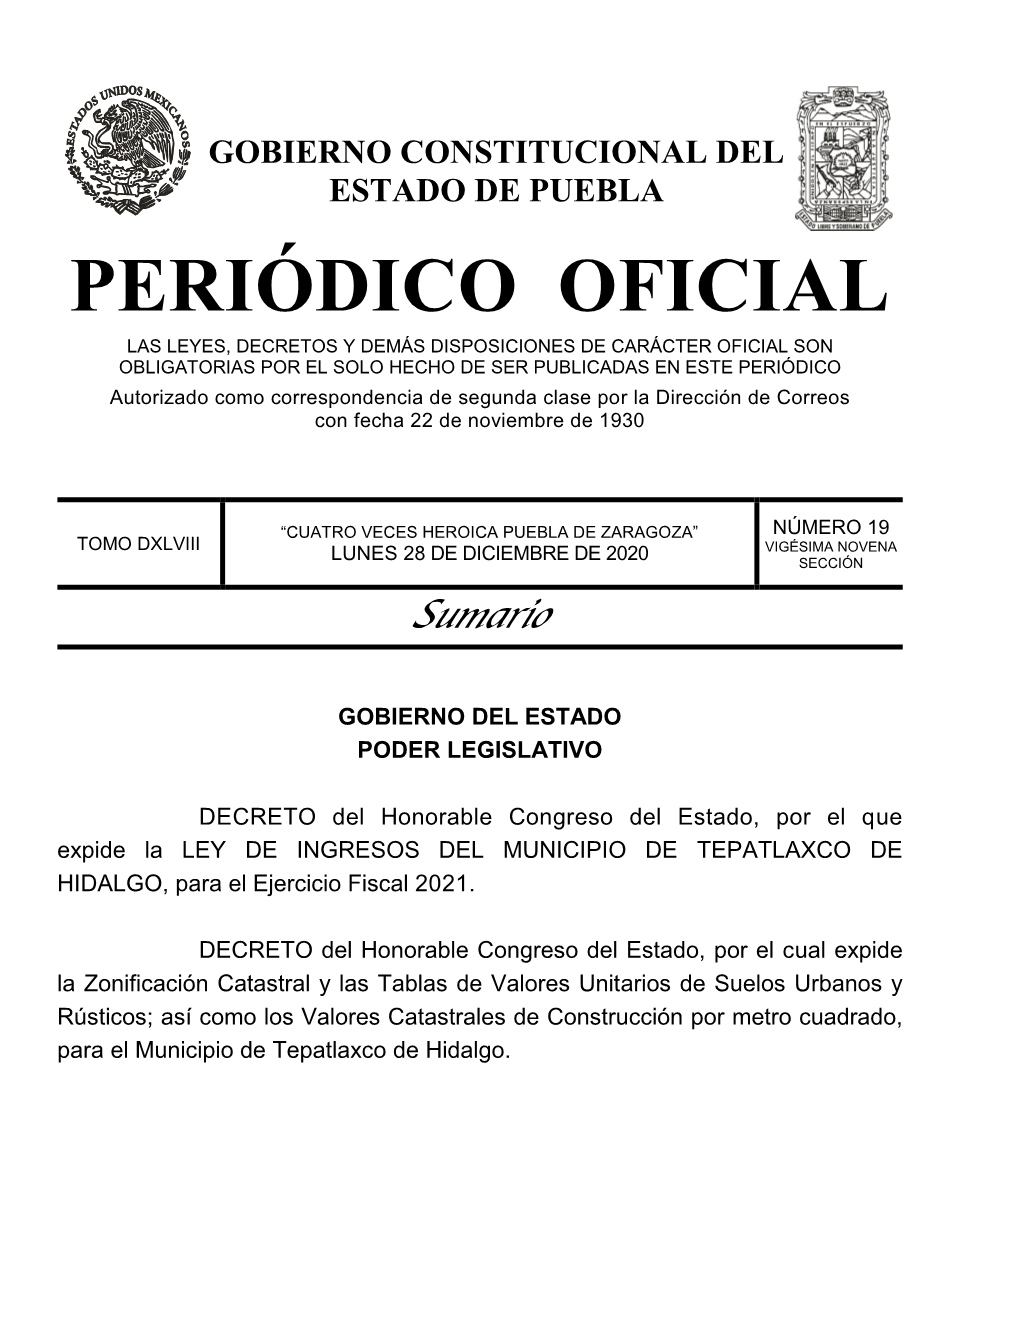 LEY DE INGRESOS DEL MUNICIPIO DE TEPATLAXCO DE HIDALGO, Para El Ejercicio Fiscal 2021